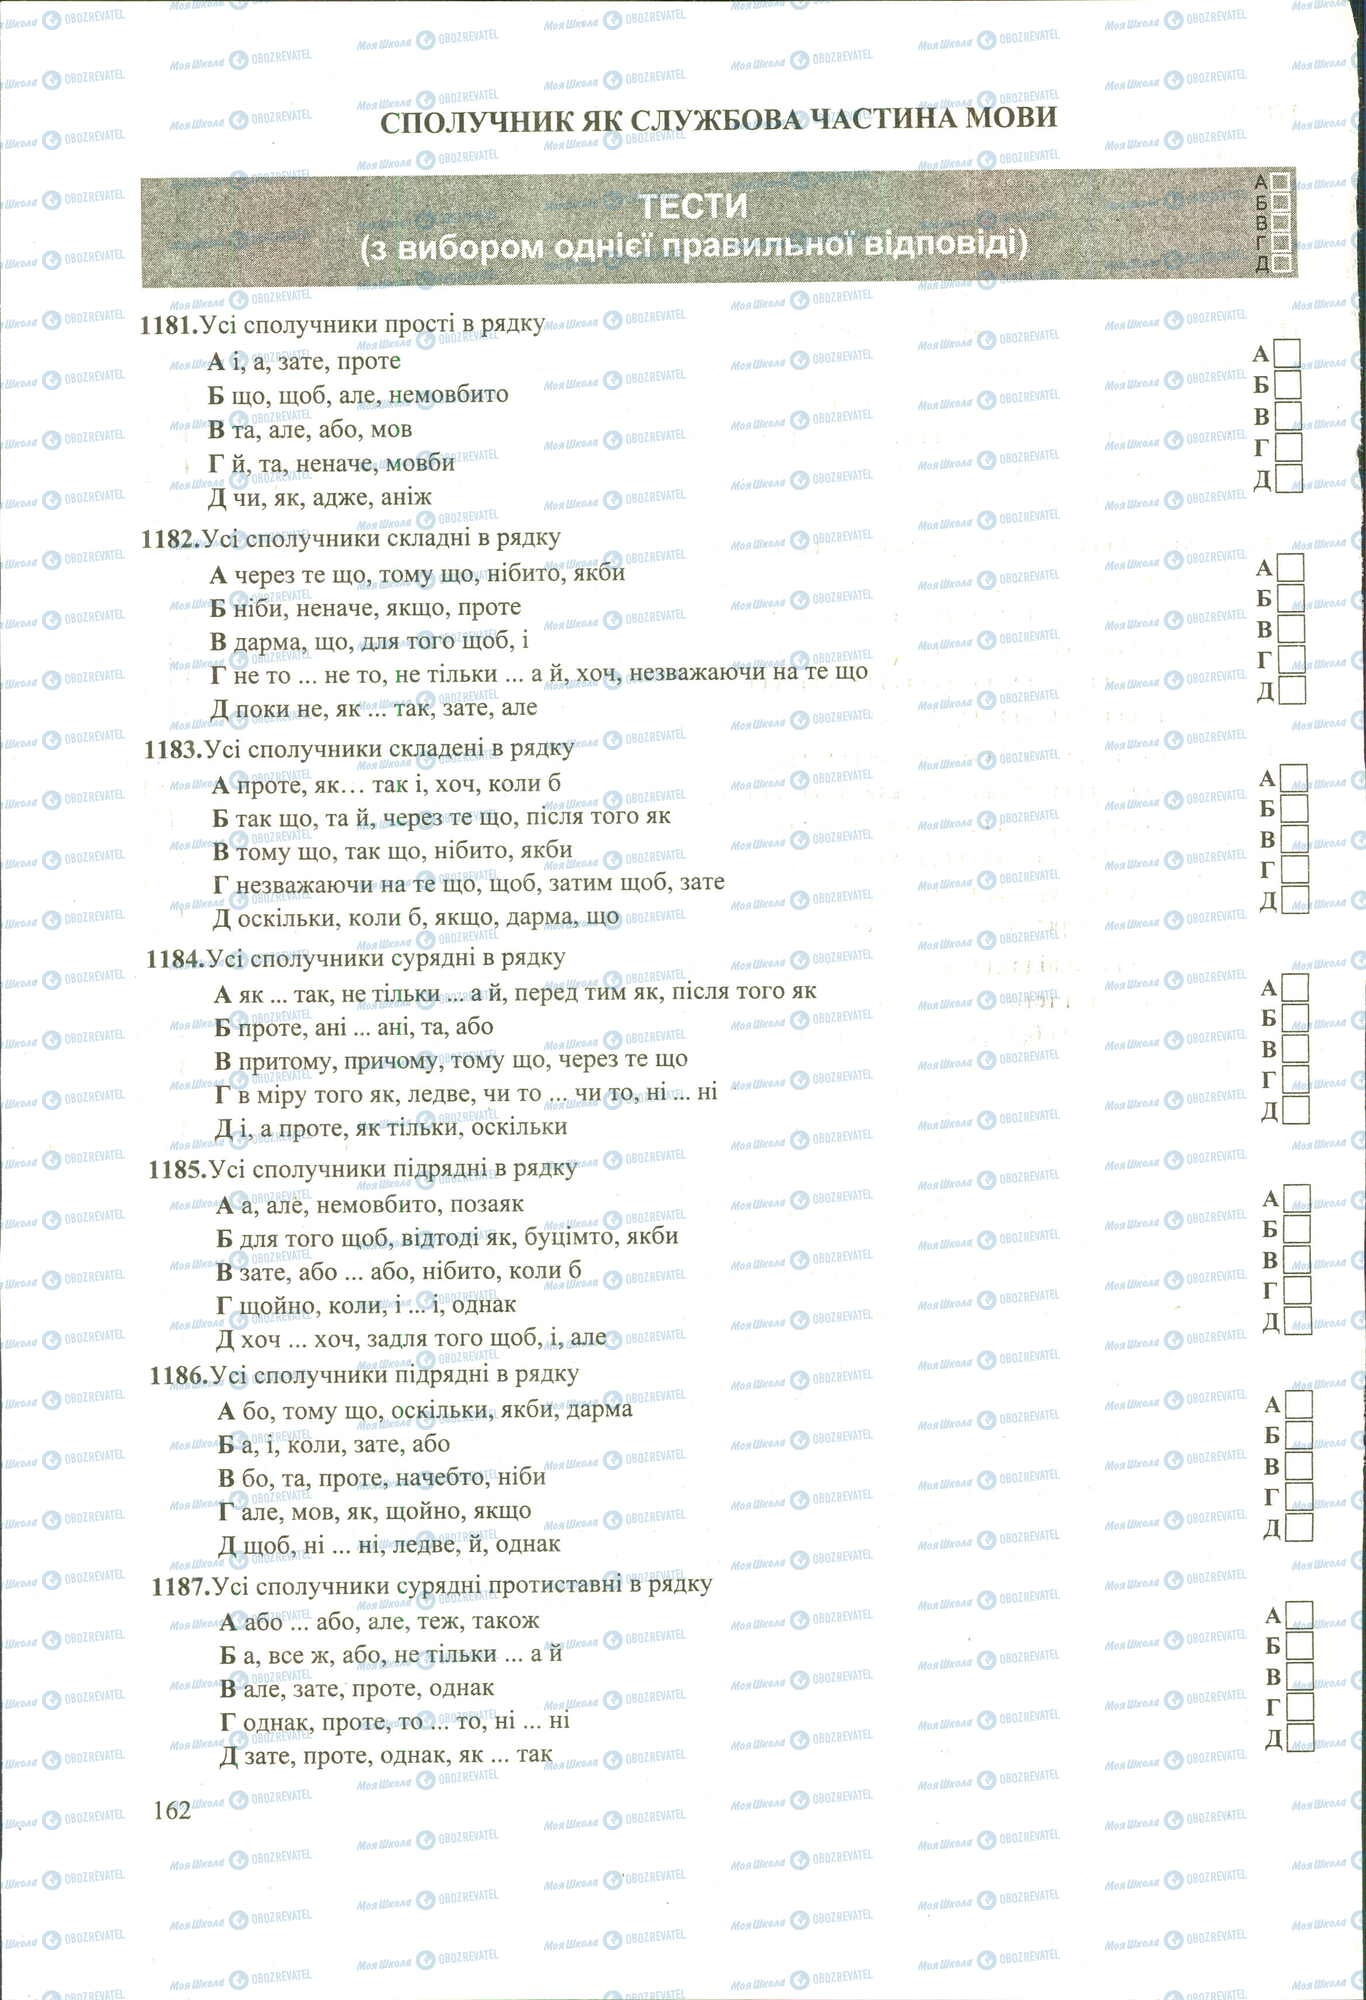 ЗНО Укр мова 11 класс страница 1181-1187